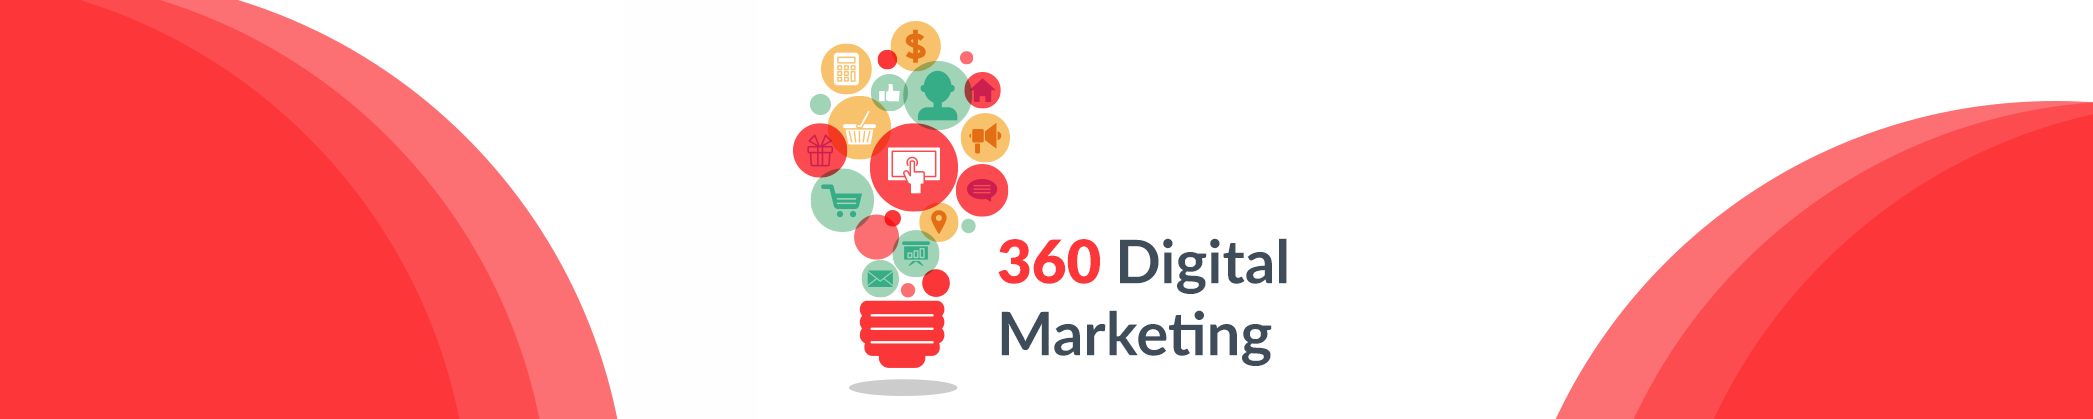 Защо е важно да имате 360° поглед над дигиталния маркетинг?